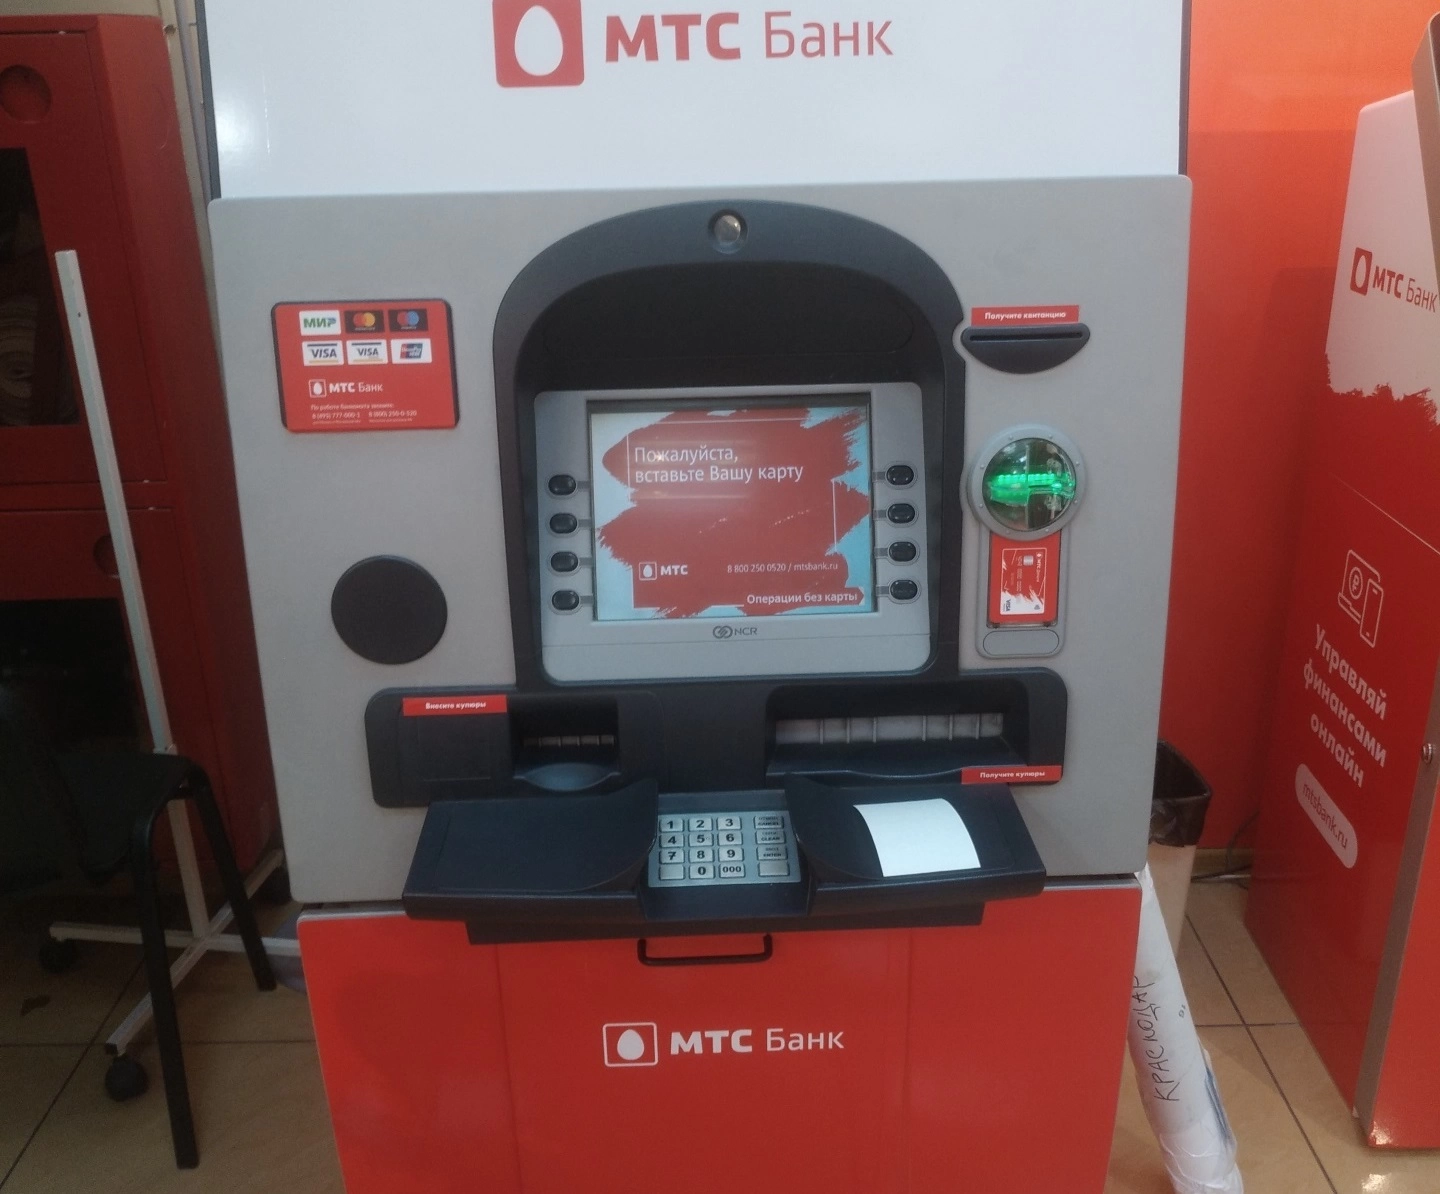 Брендирование терминала МТС банк - рекламно-производственная компания Quickprint г. Краснодар.